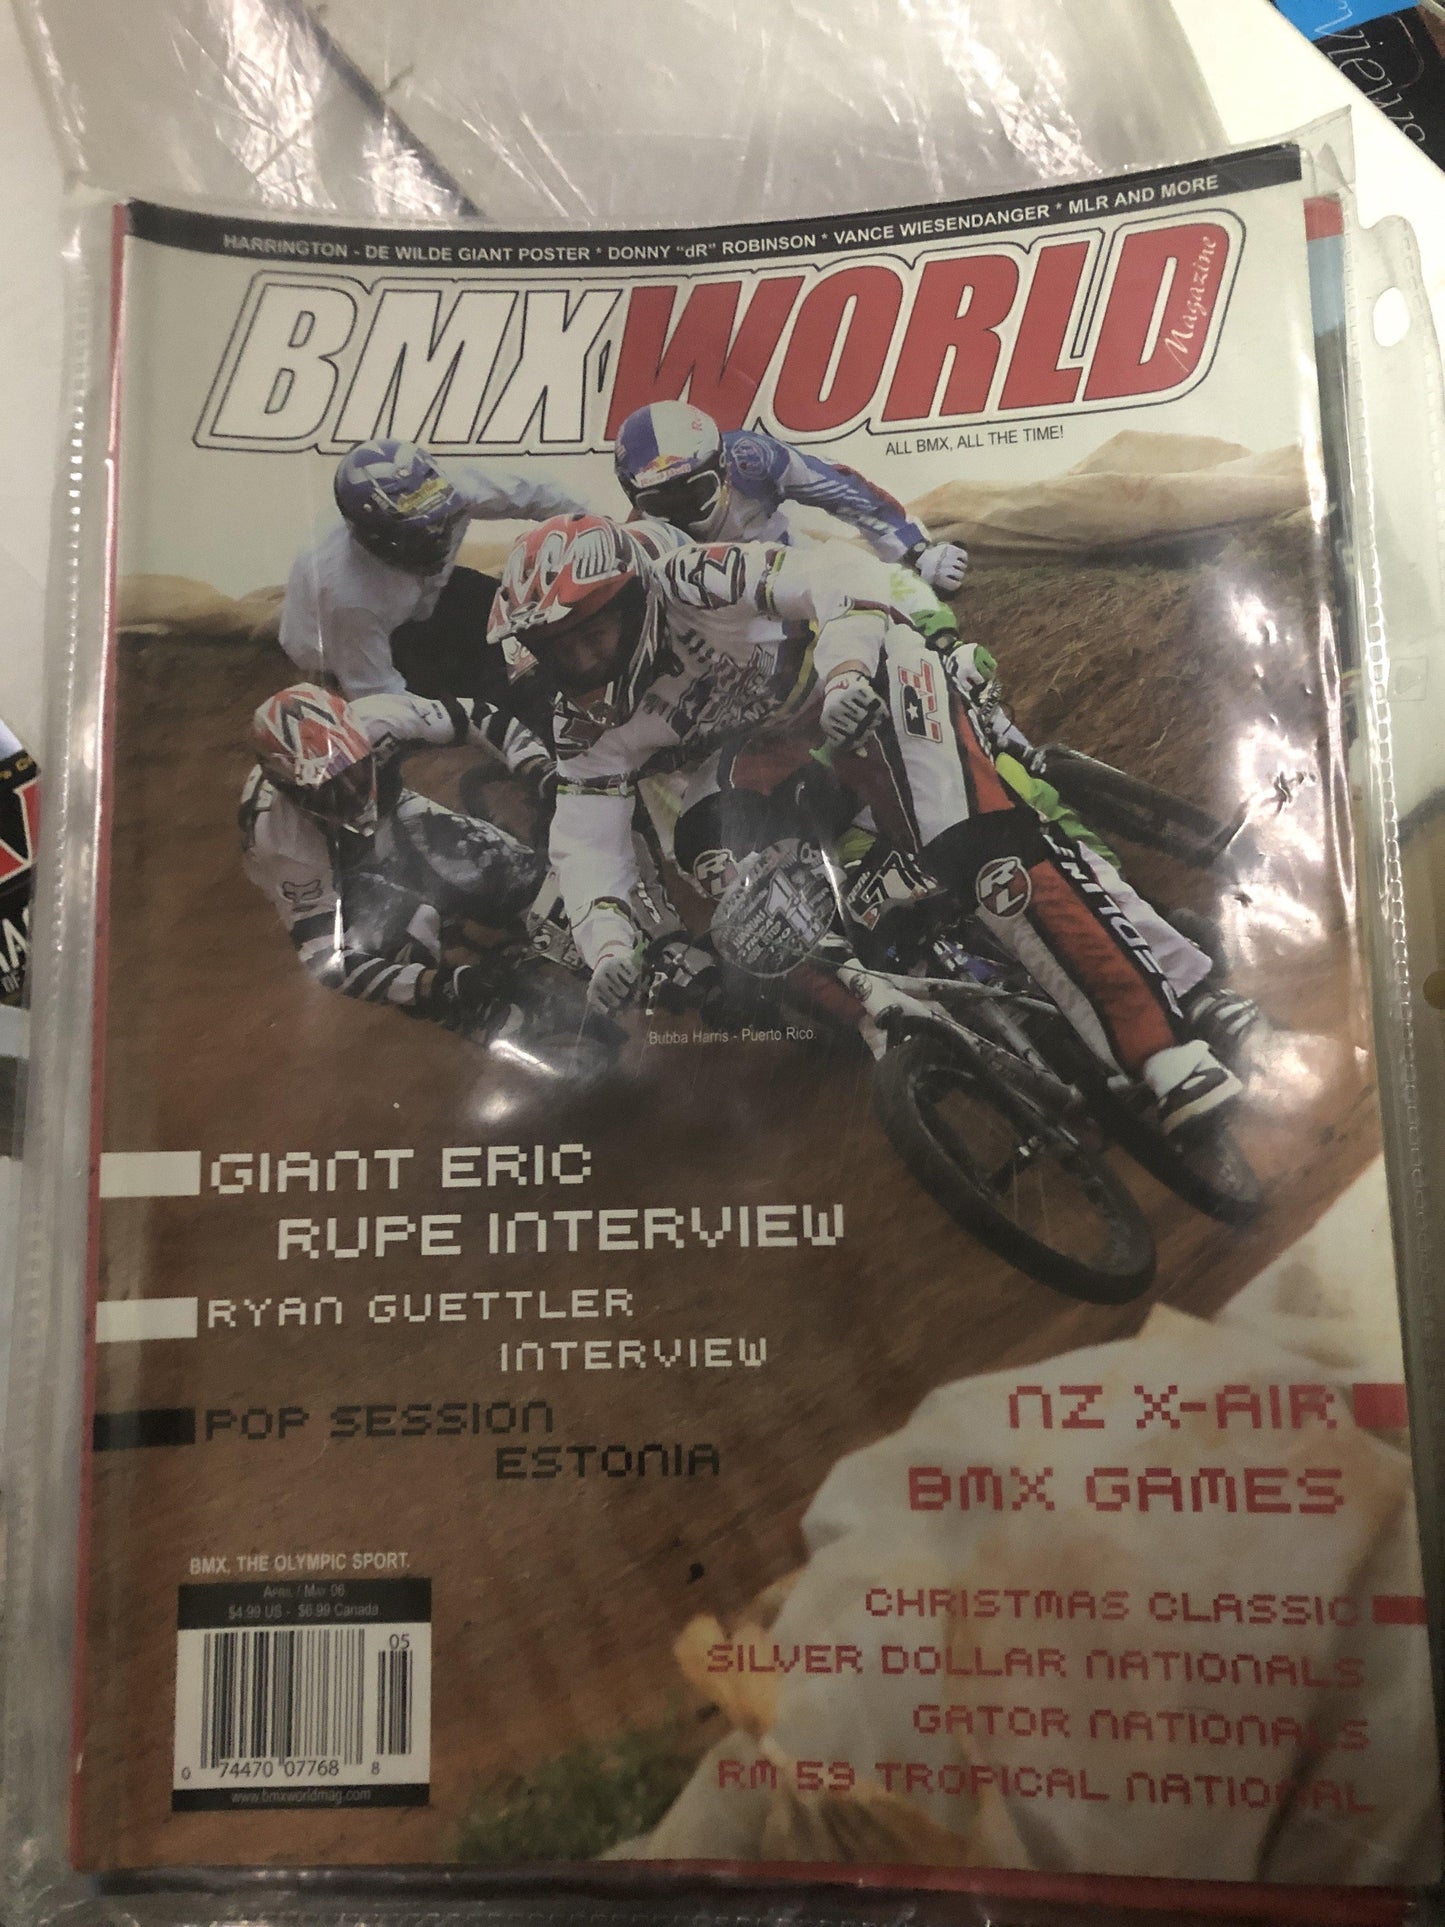 BMX World Magazine back issues - POWERS BMX